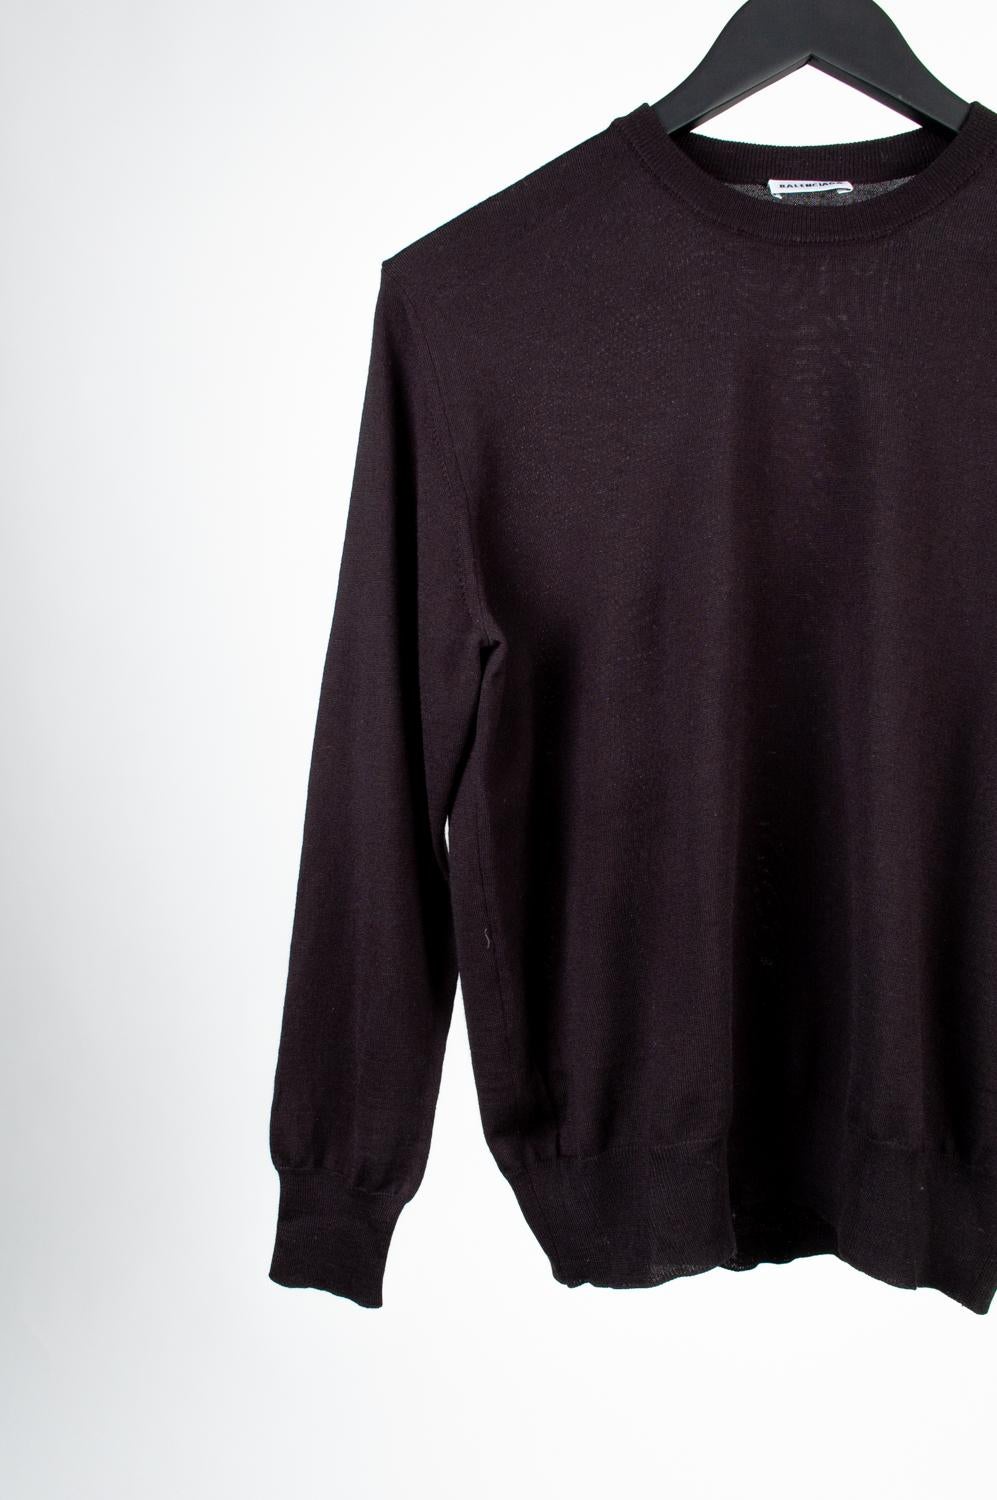 100% authentique Balenciaga Crew Neck Men Sweater, S598 (Balenciaga sur la partie rare du pull près de la couture du cou)
Couleur : Noir
(La couleur réelle peut varier légèrement en raison de l'interprétation individuelle de l'écran de